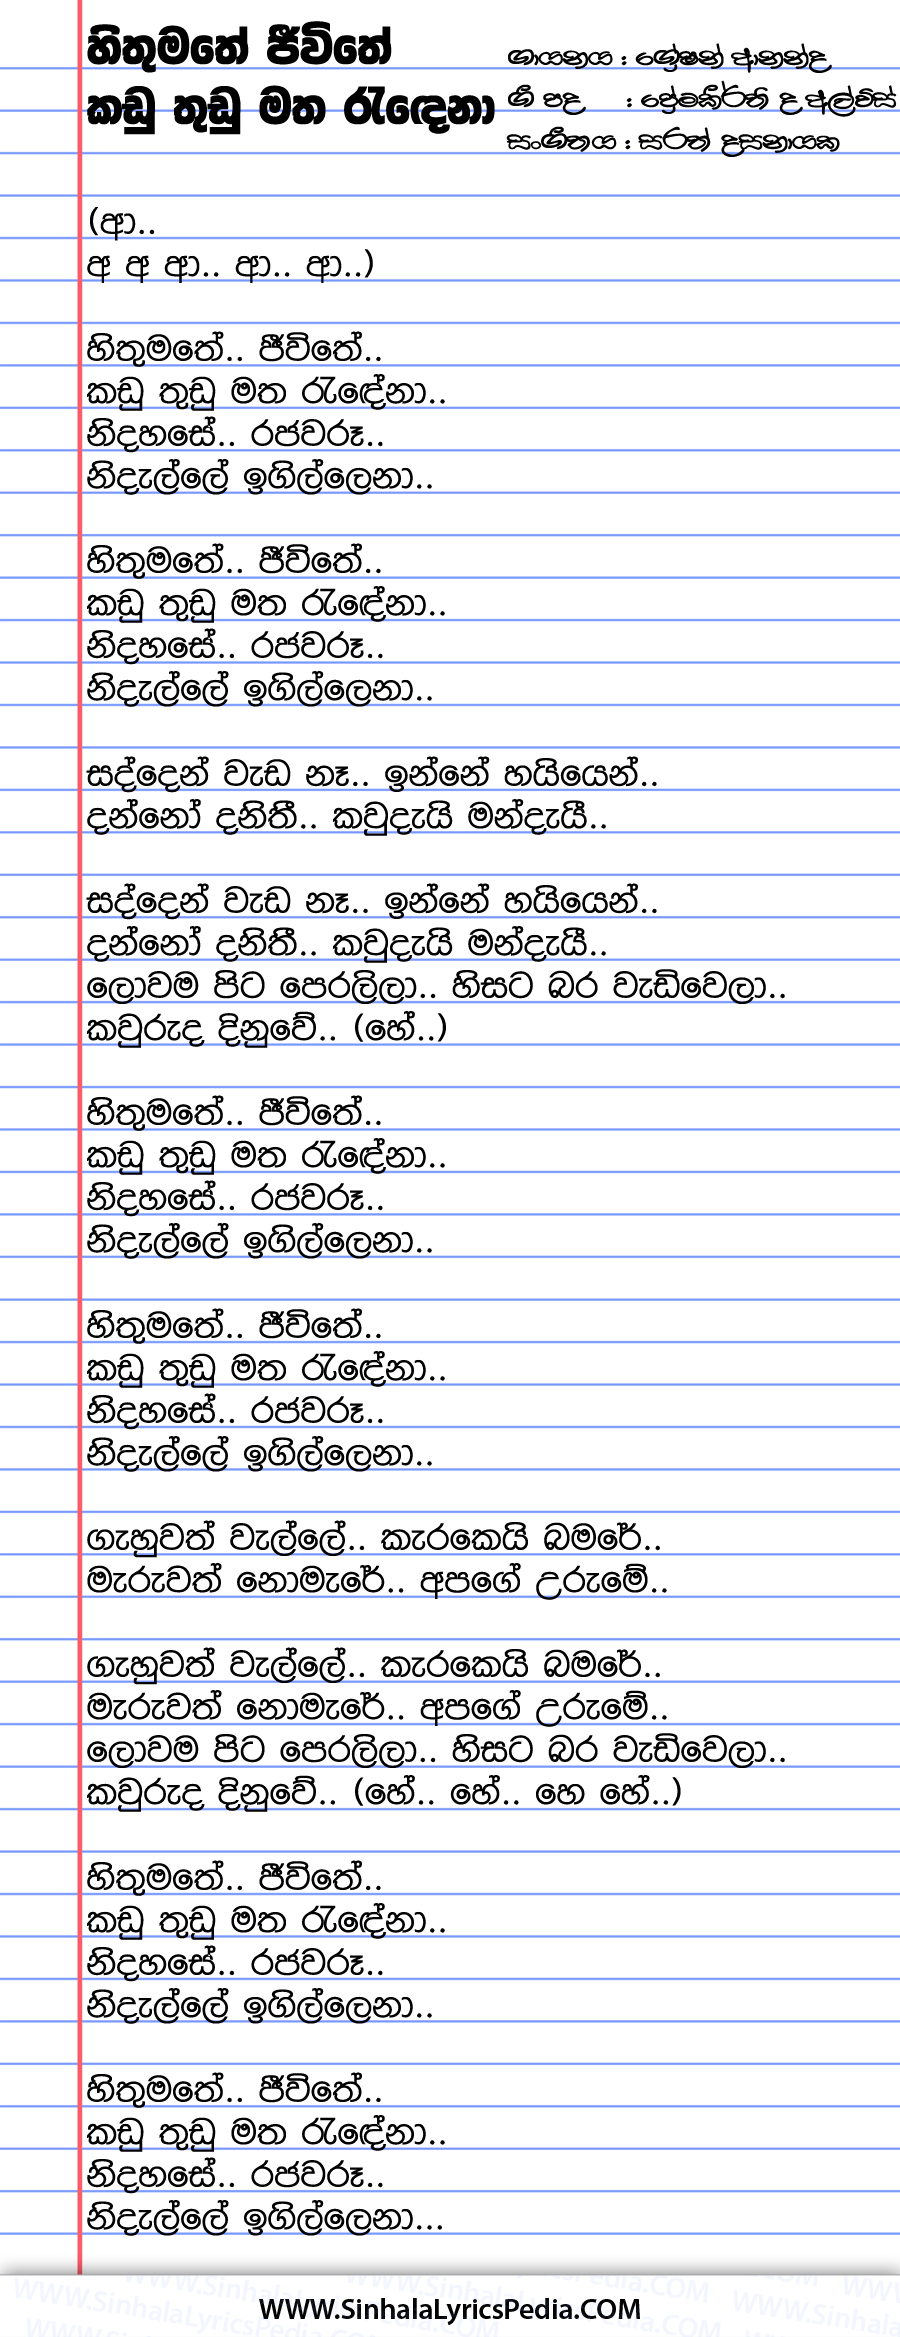 Hithumathe Jeewithe Kadu Thudu Song Lyrics